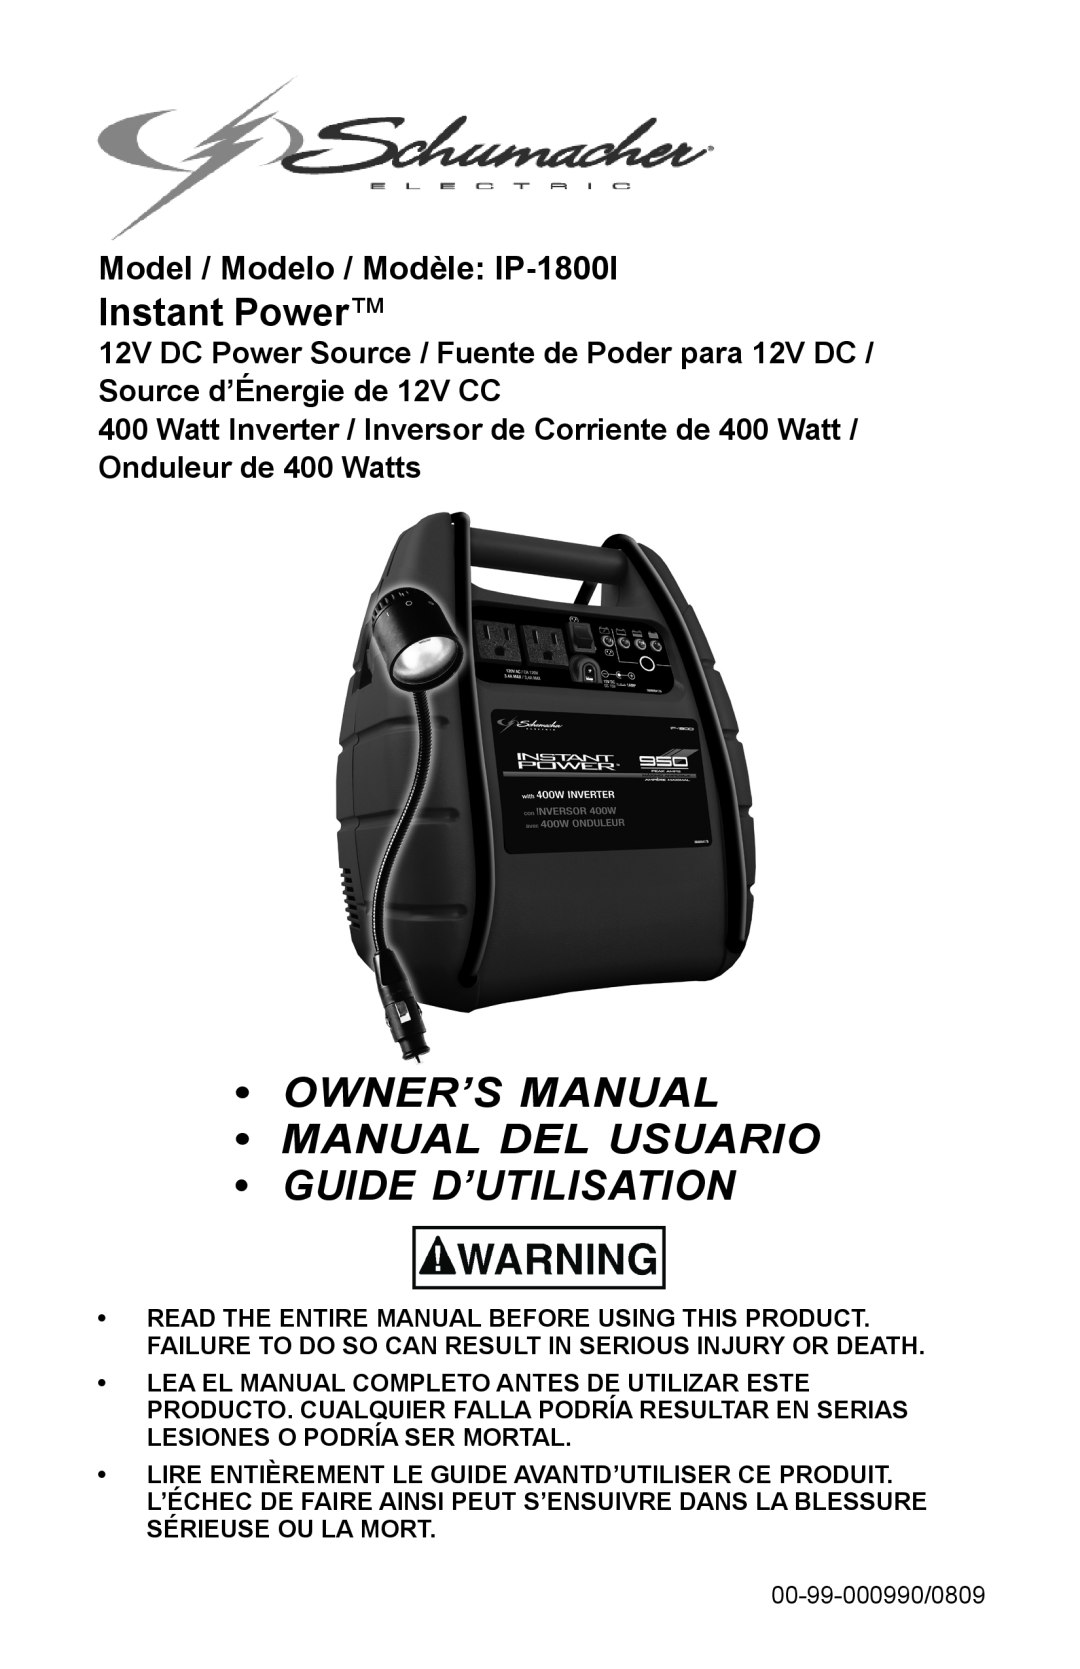 Schumacher owner manual Model / Modelo / Modèle IP-1800I, OWNER’S MANUAL Manual del usuario GUIDE D’UTILISATION 